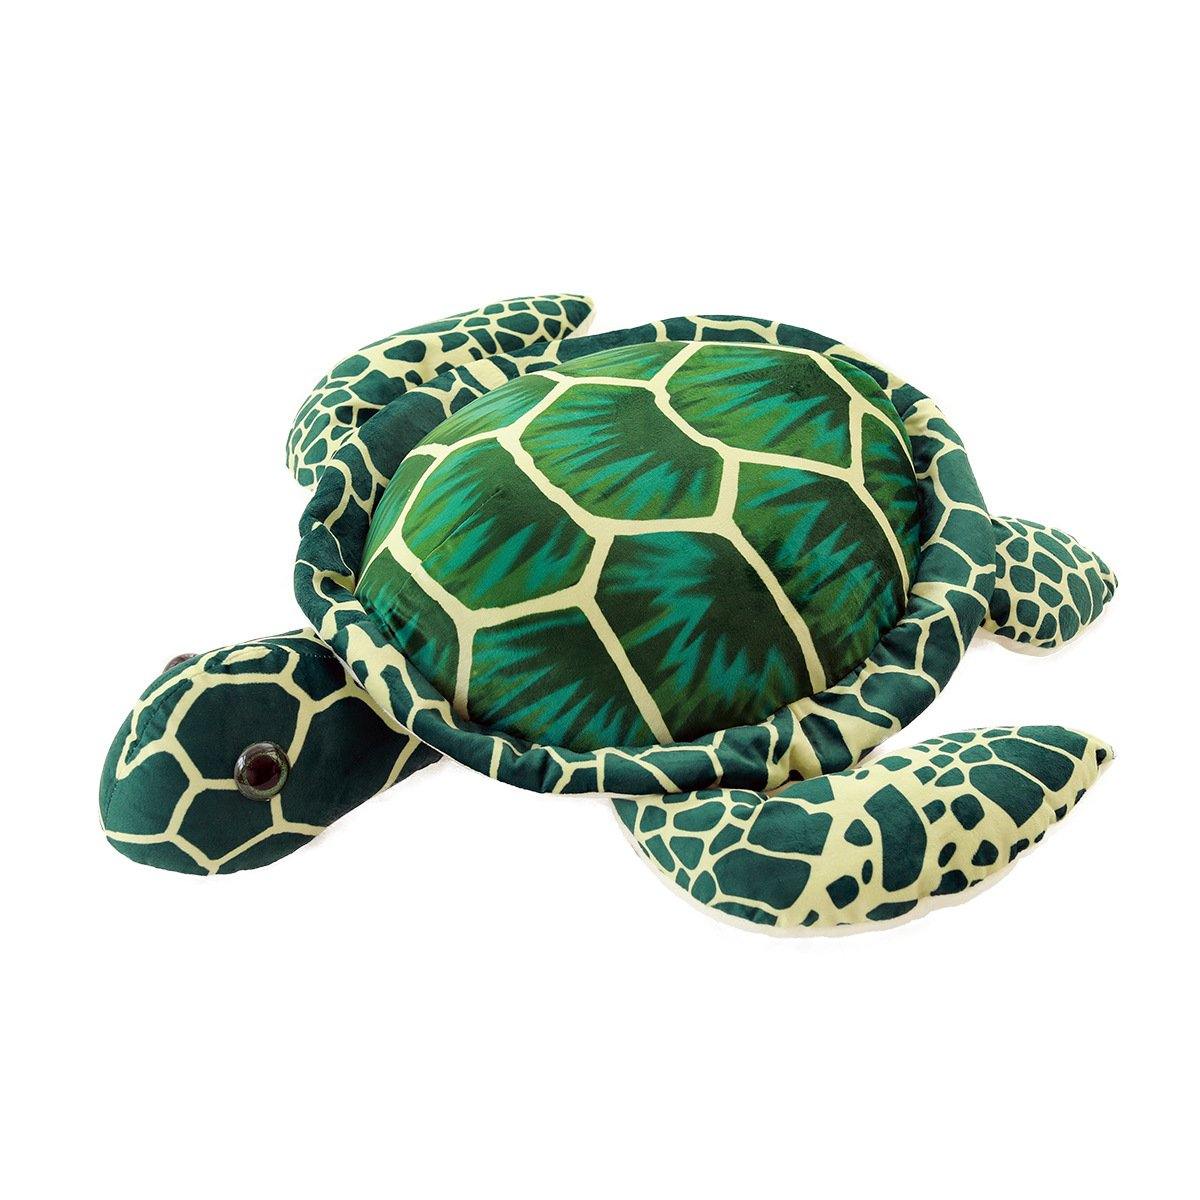 Big-eyed Sea turtle plush toy - Plushies